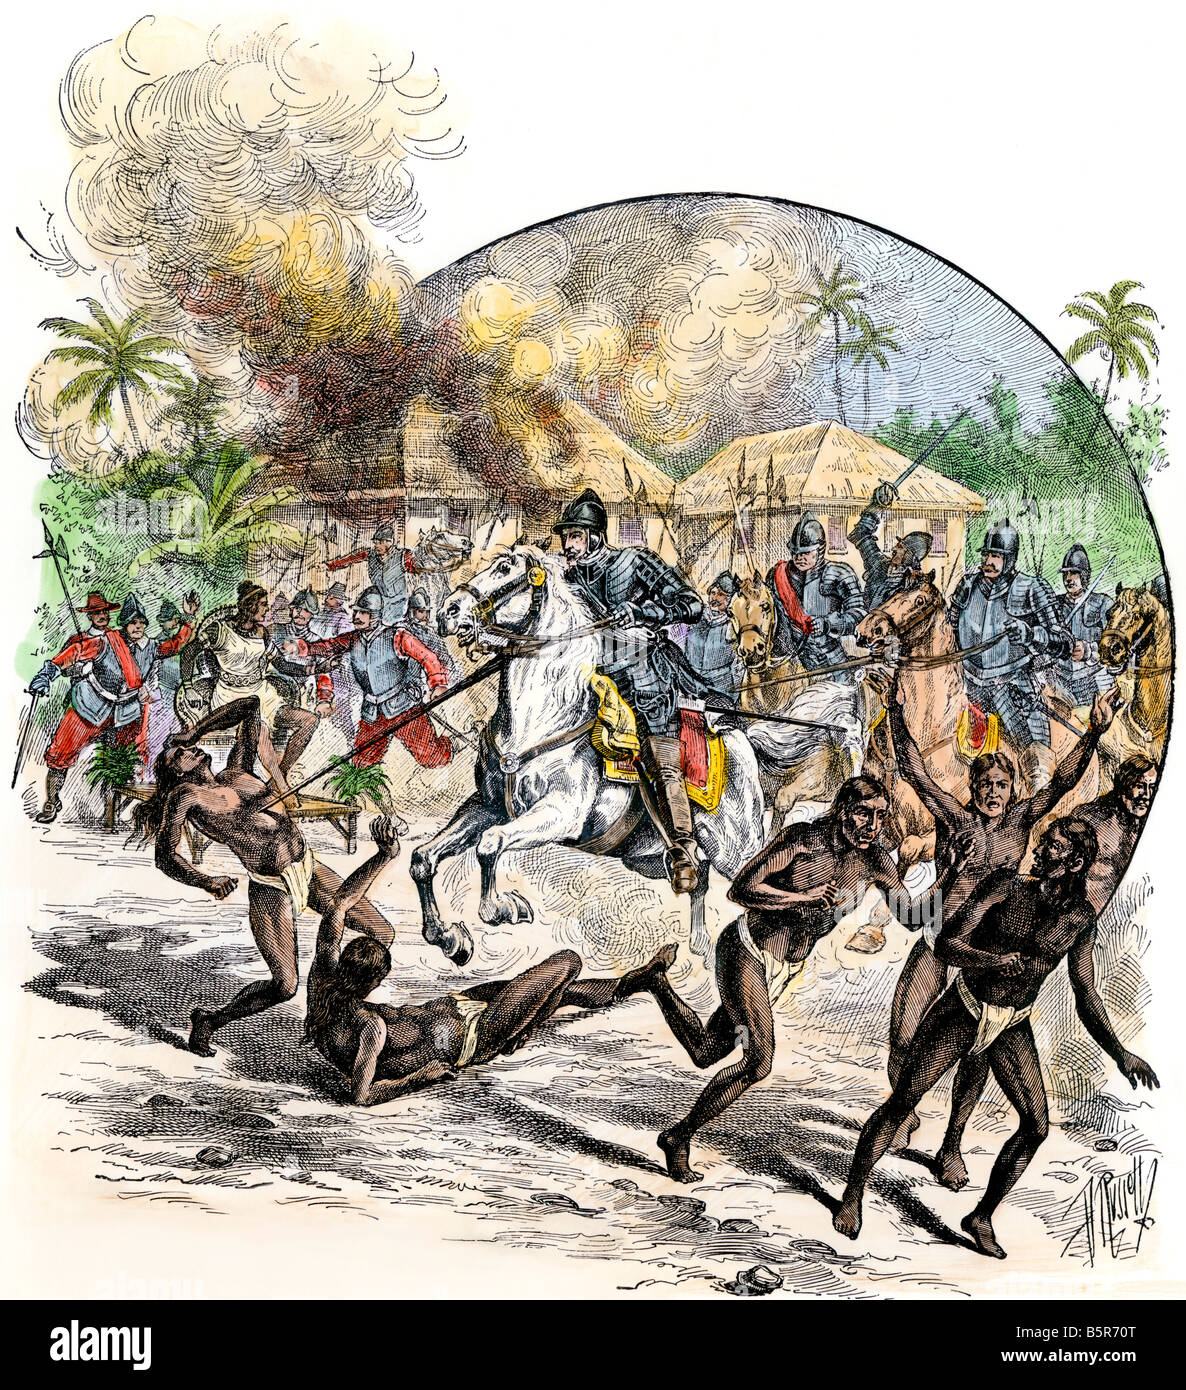 Muerte y captura españoles nativos después de la conquista del Nuevo Mundo por Colón. Xilografía coloreada a mano Foto de stock